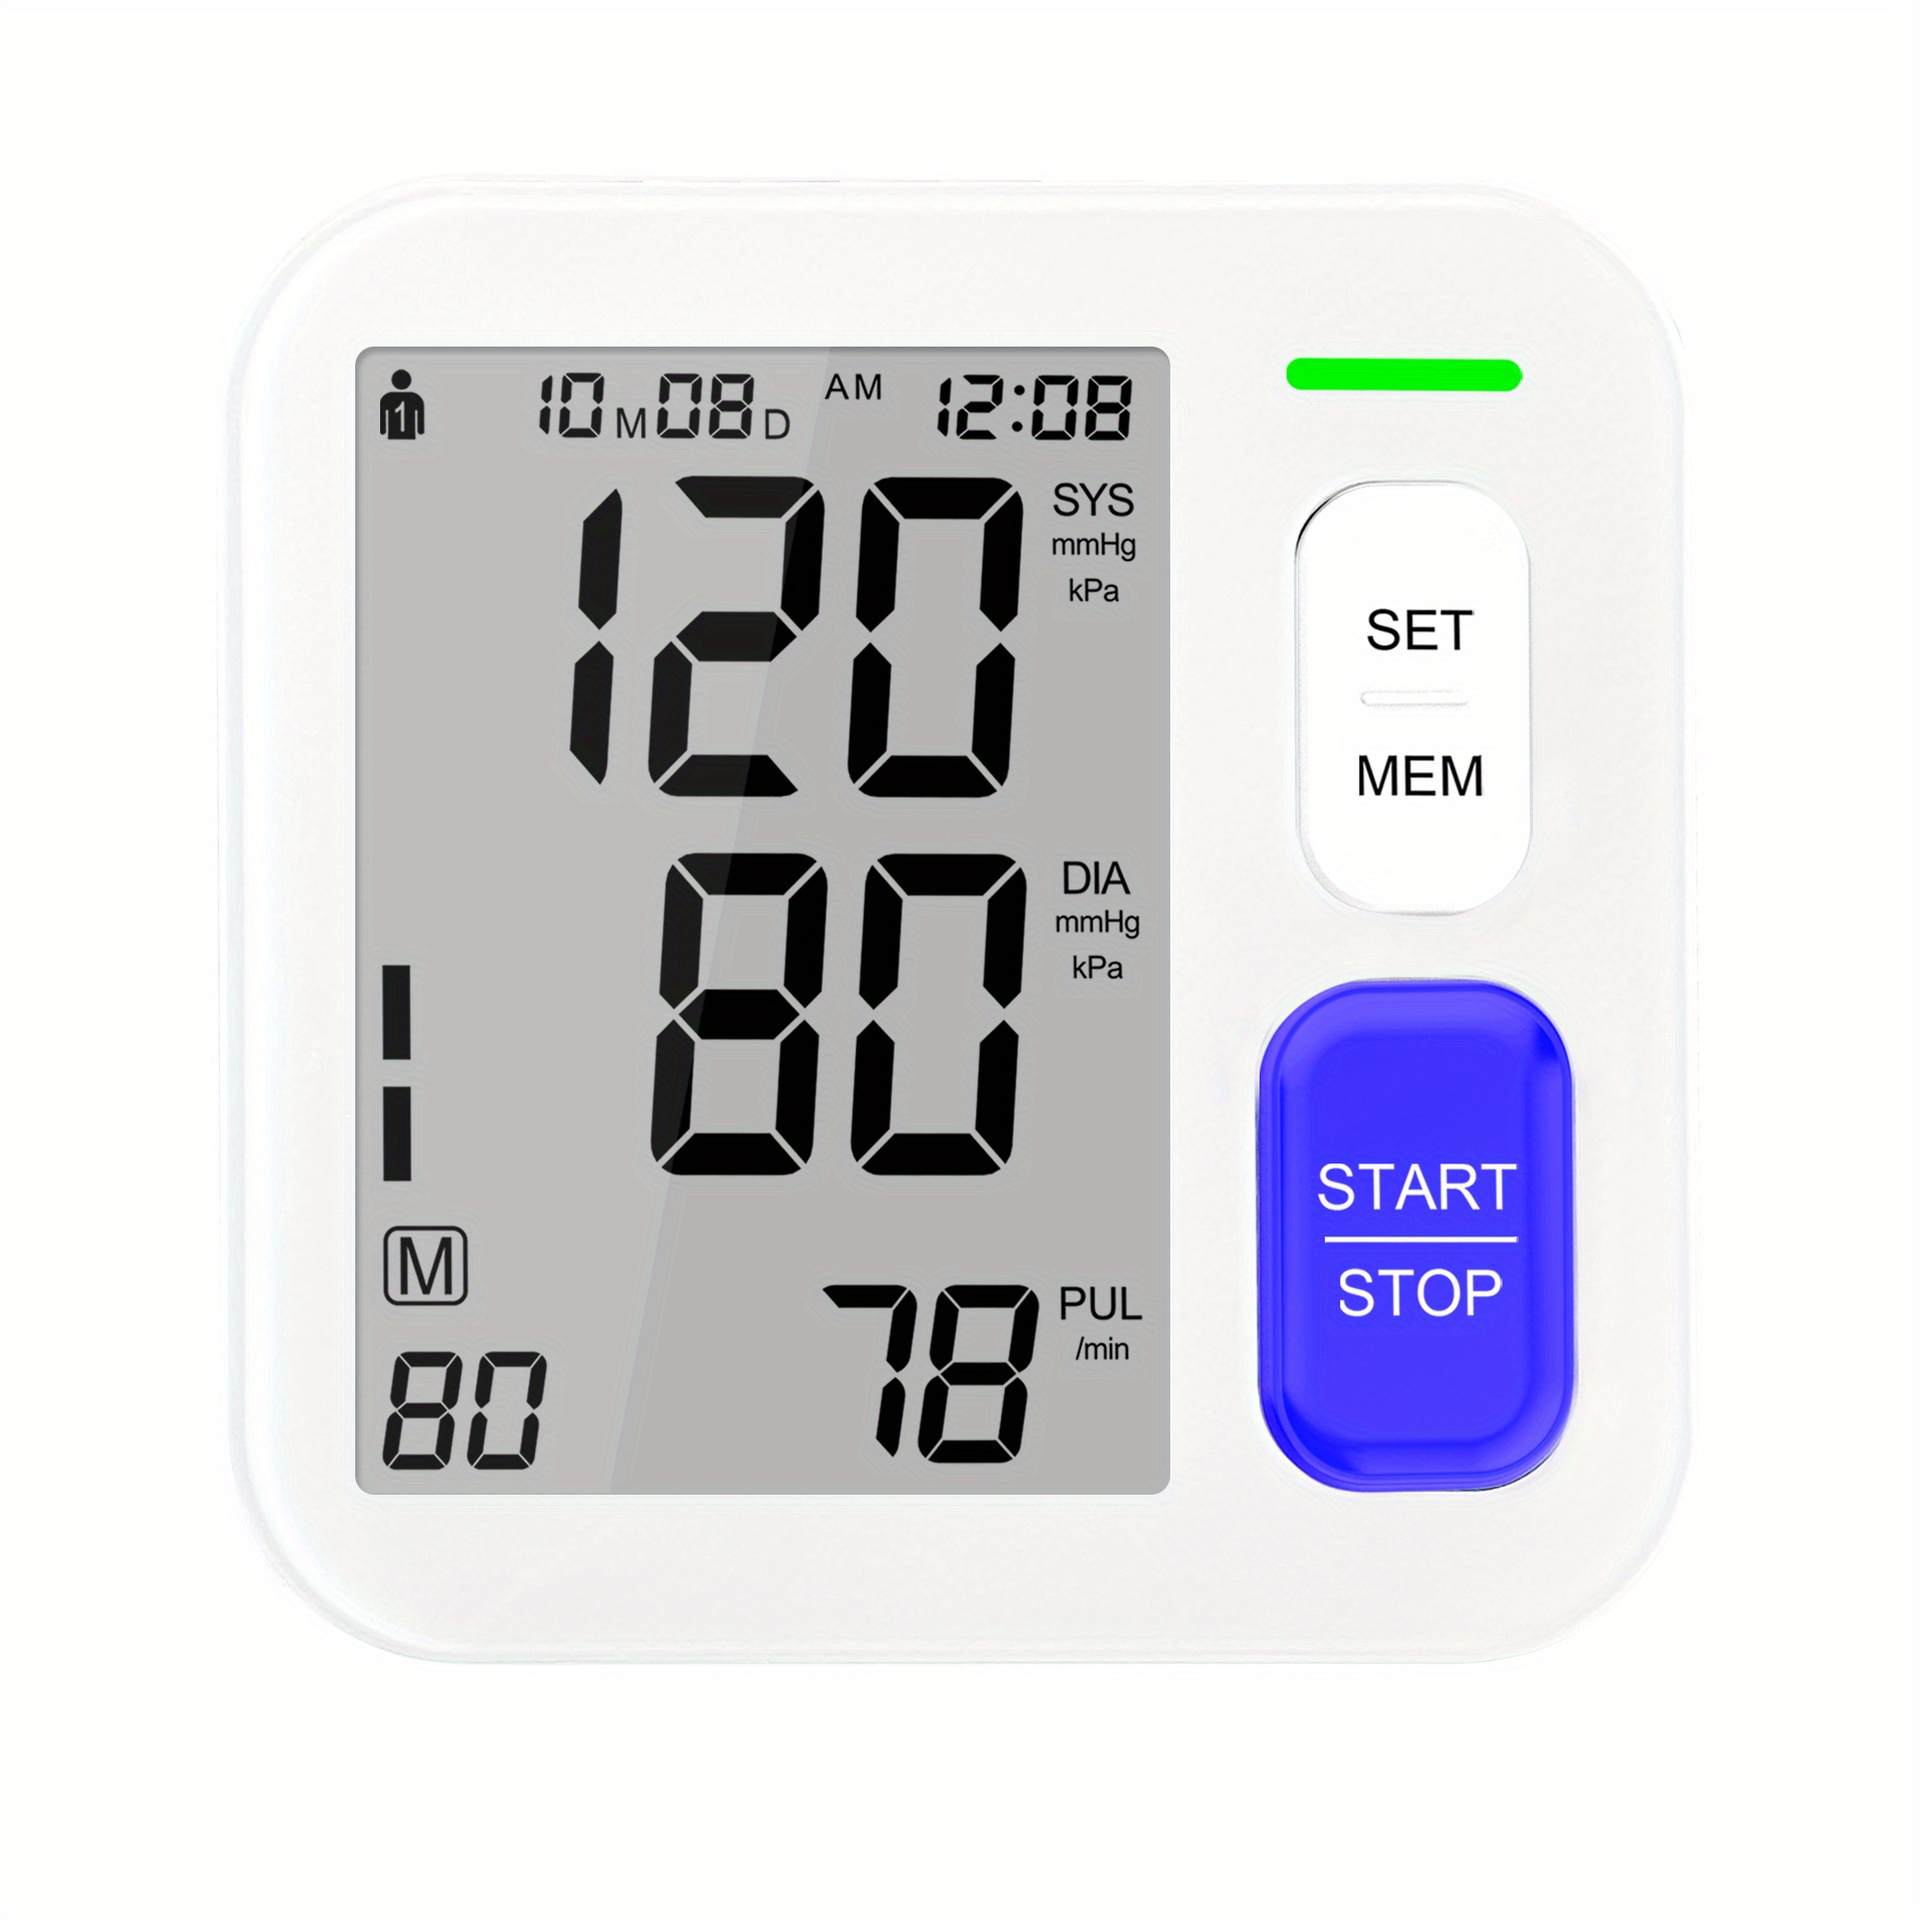 Lovia Intelligent Type Digital Blood Pressure Monitor w/ LCD Display NEW